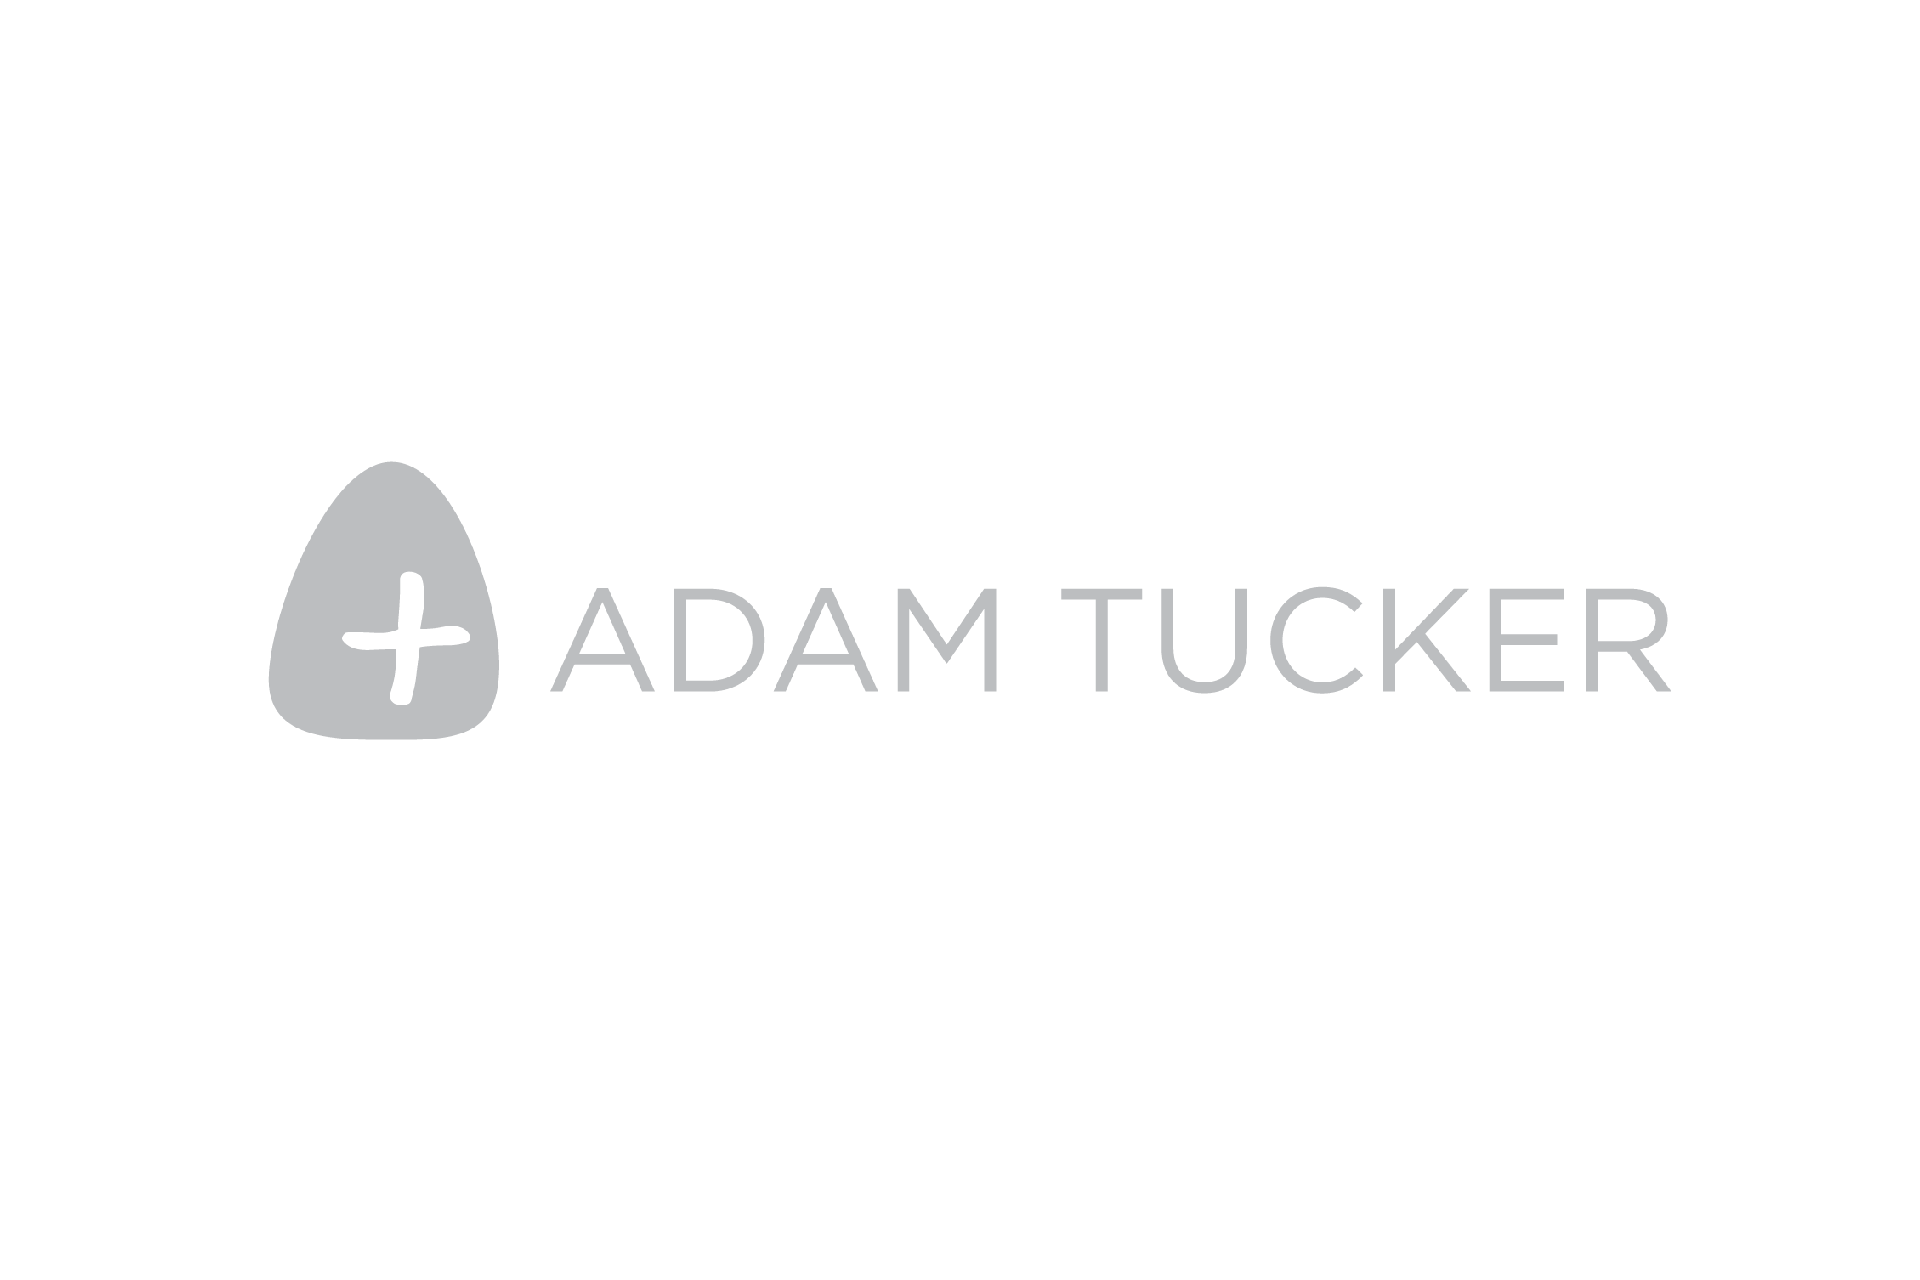 Adam Tucker